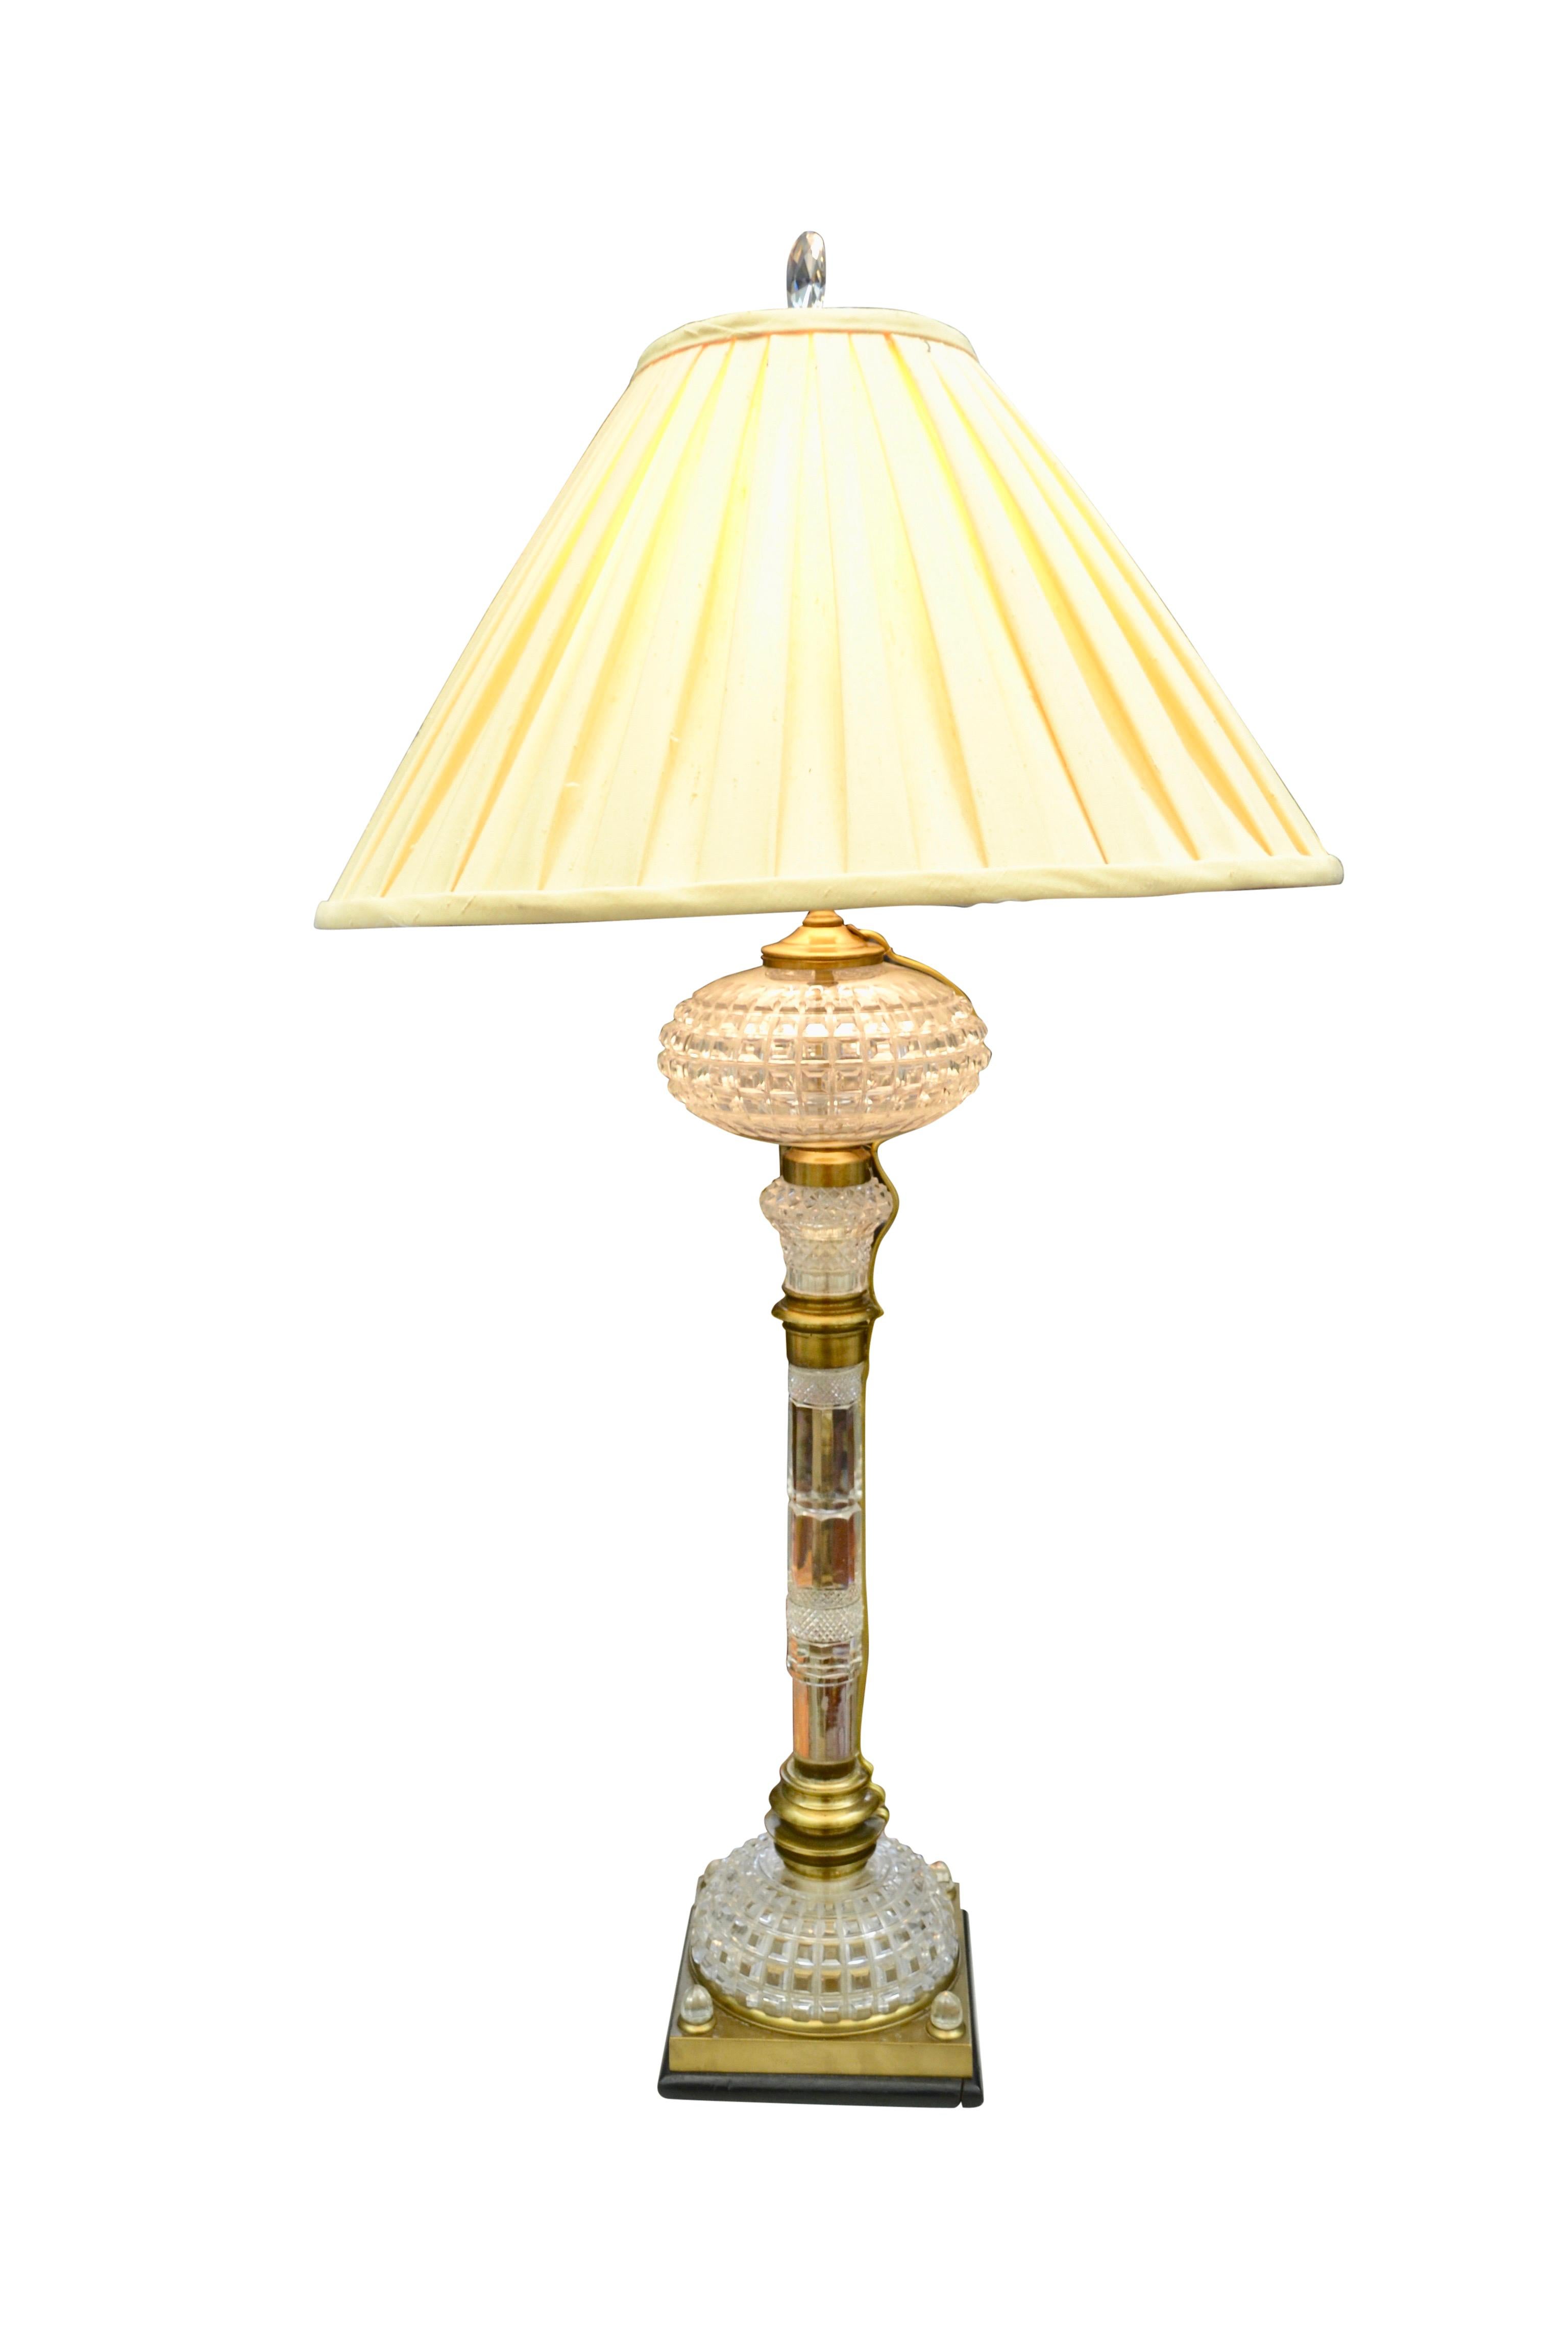 Une lampe à huile en cristal taillé de la fin du XIXe siècle, désormais électrifiée. Heureusement, le câblage est extérieur, il n'y a donc aucun dommage à la lampe d'origine. La colonne en cristal et en laiton repose sur une base en cristal